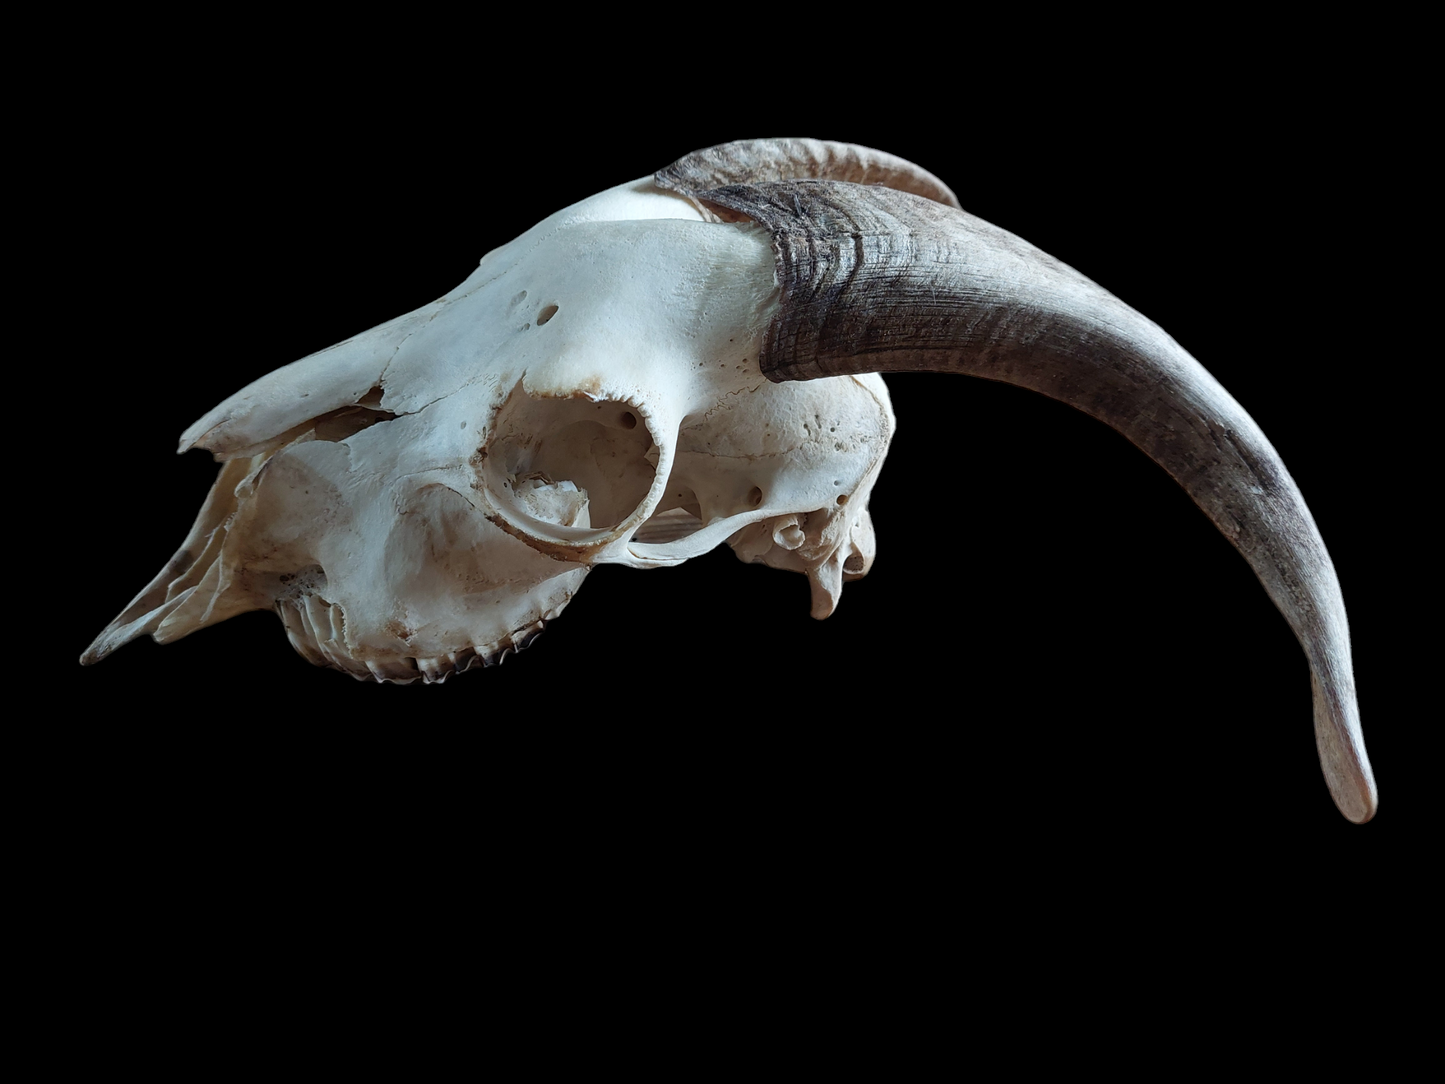 Goat skull #4